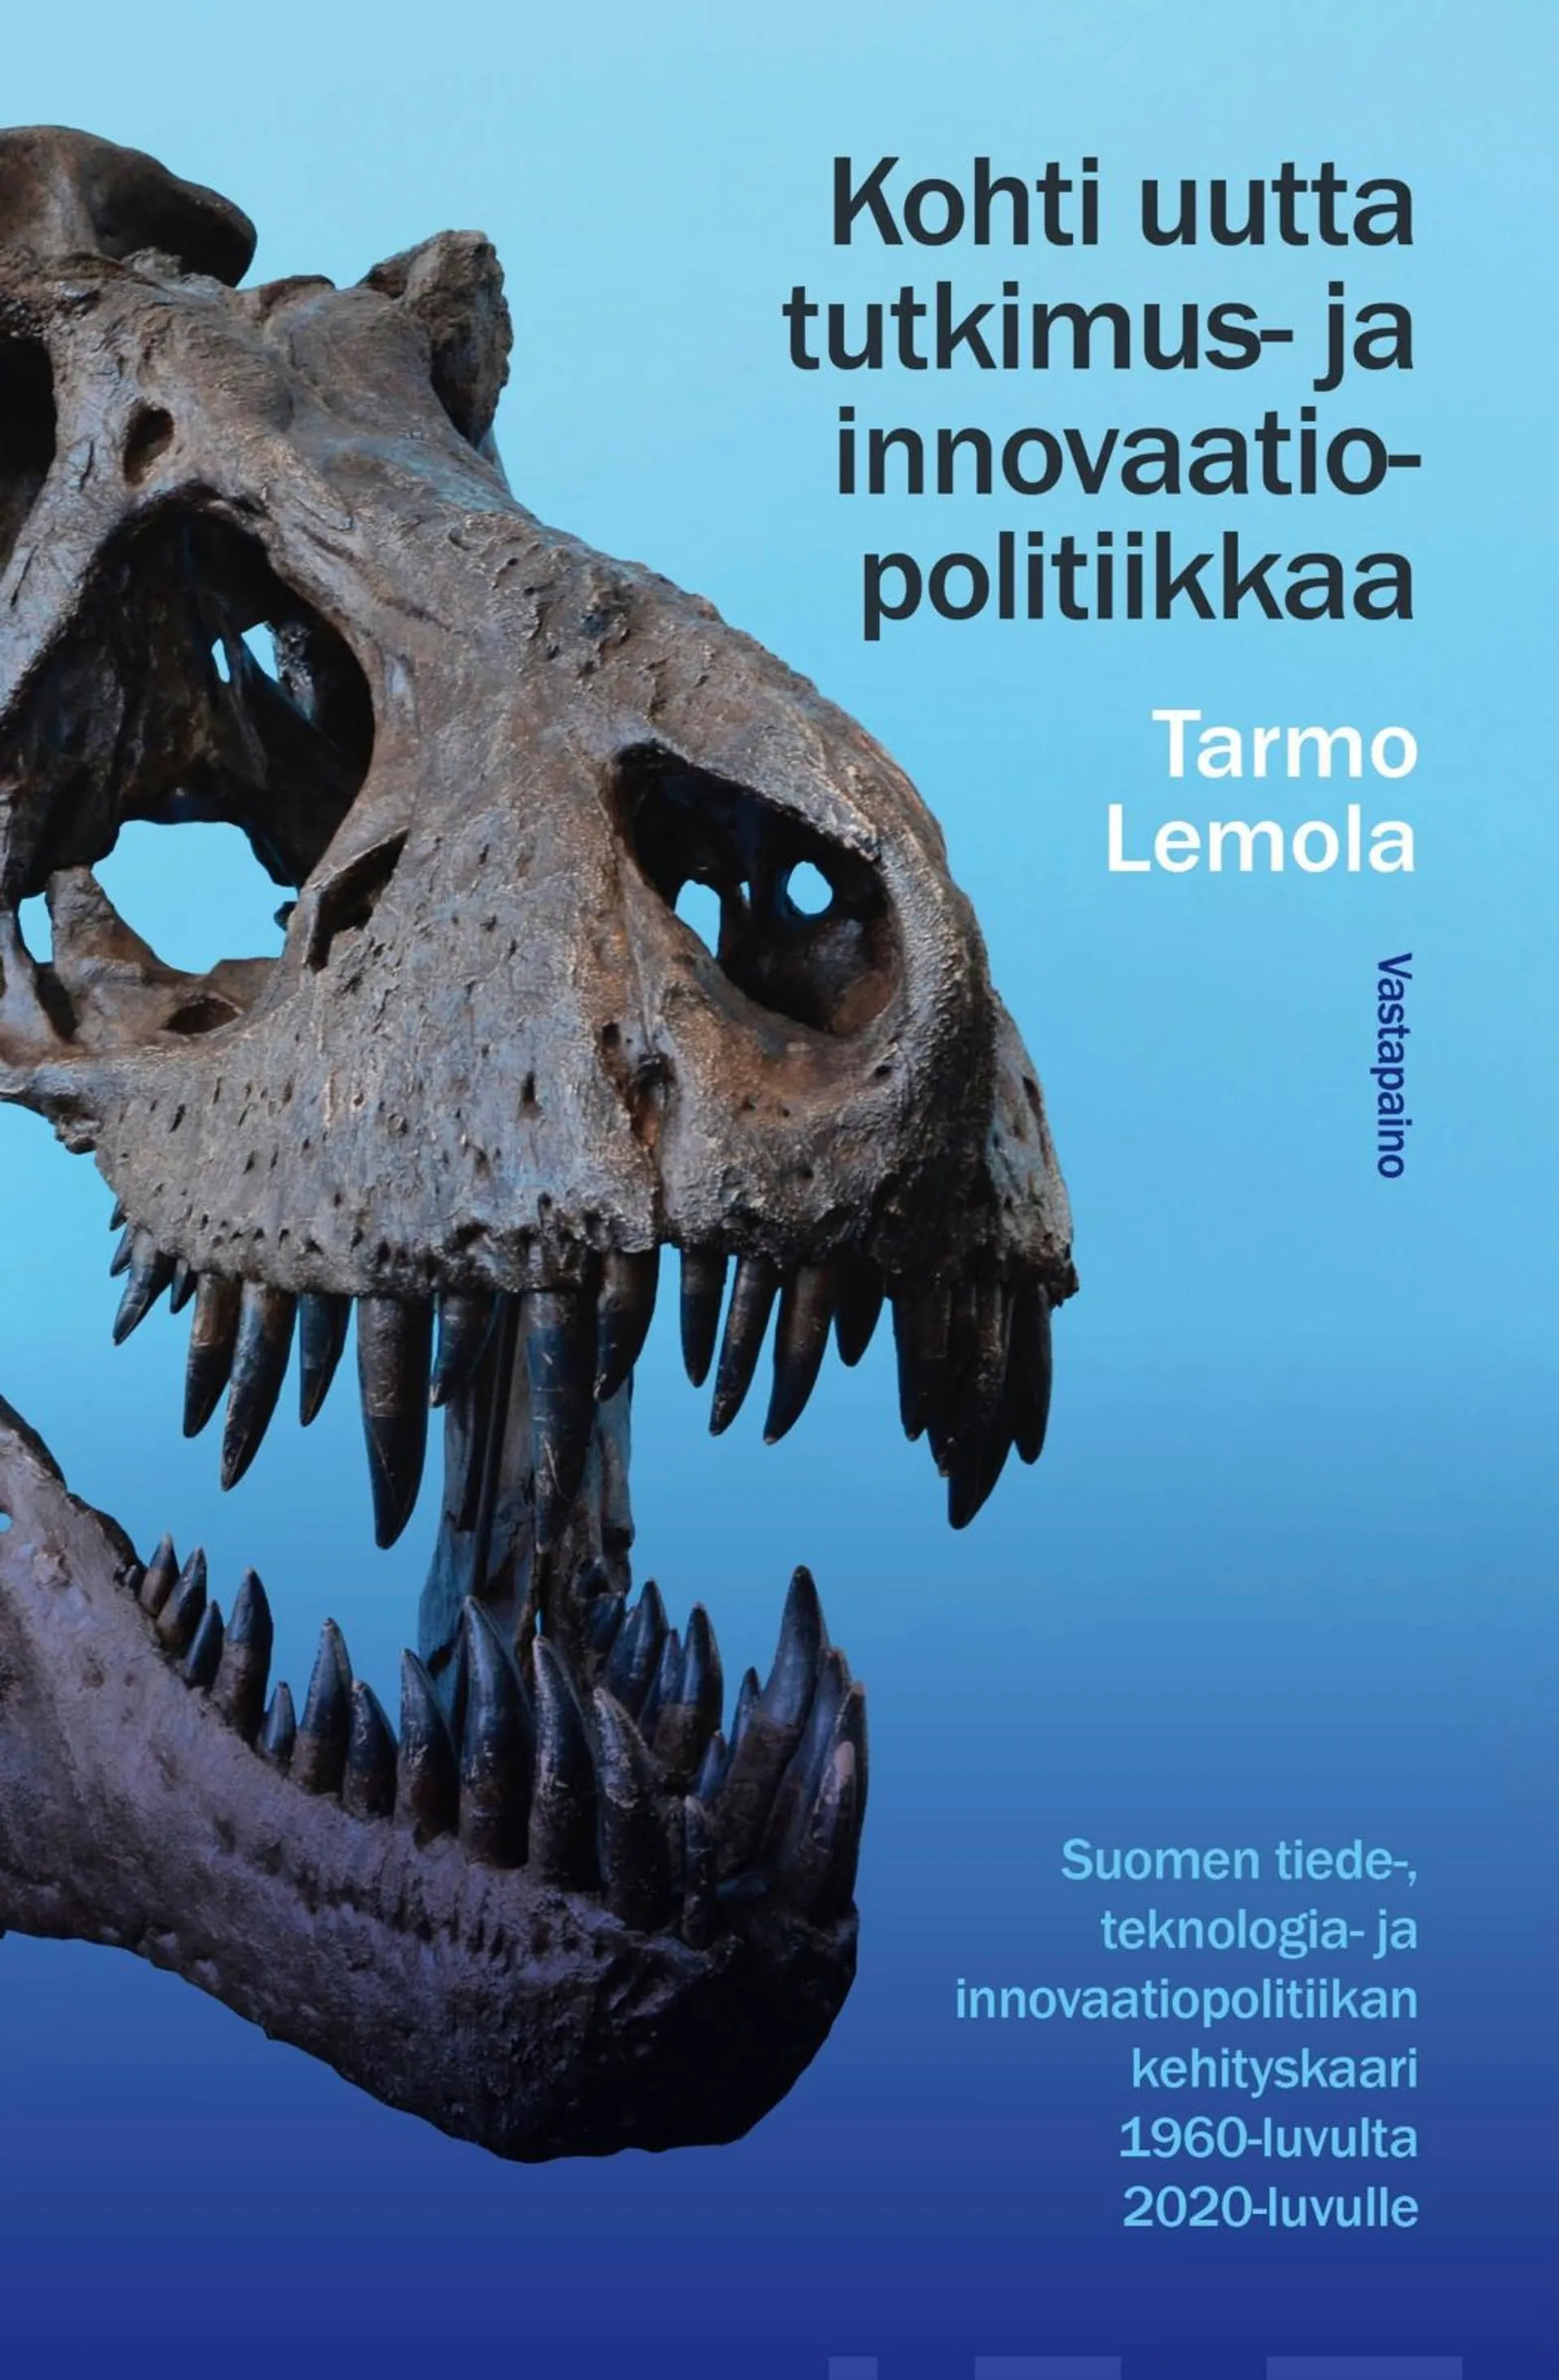 Lemola, Kohti uutta tutkimus- ja innovaatiopolitiikkaa - Suomen tiede-, teknologia- ja innovaatiopolitiikan kehityskaari 1960-luvulta 2020-luvulle